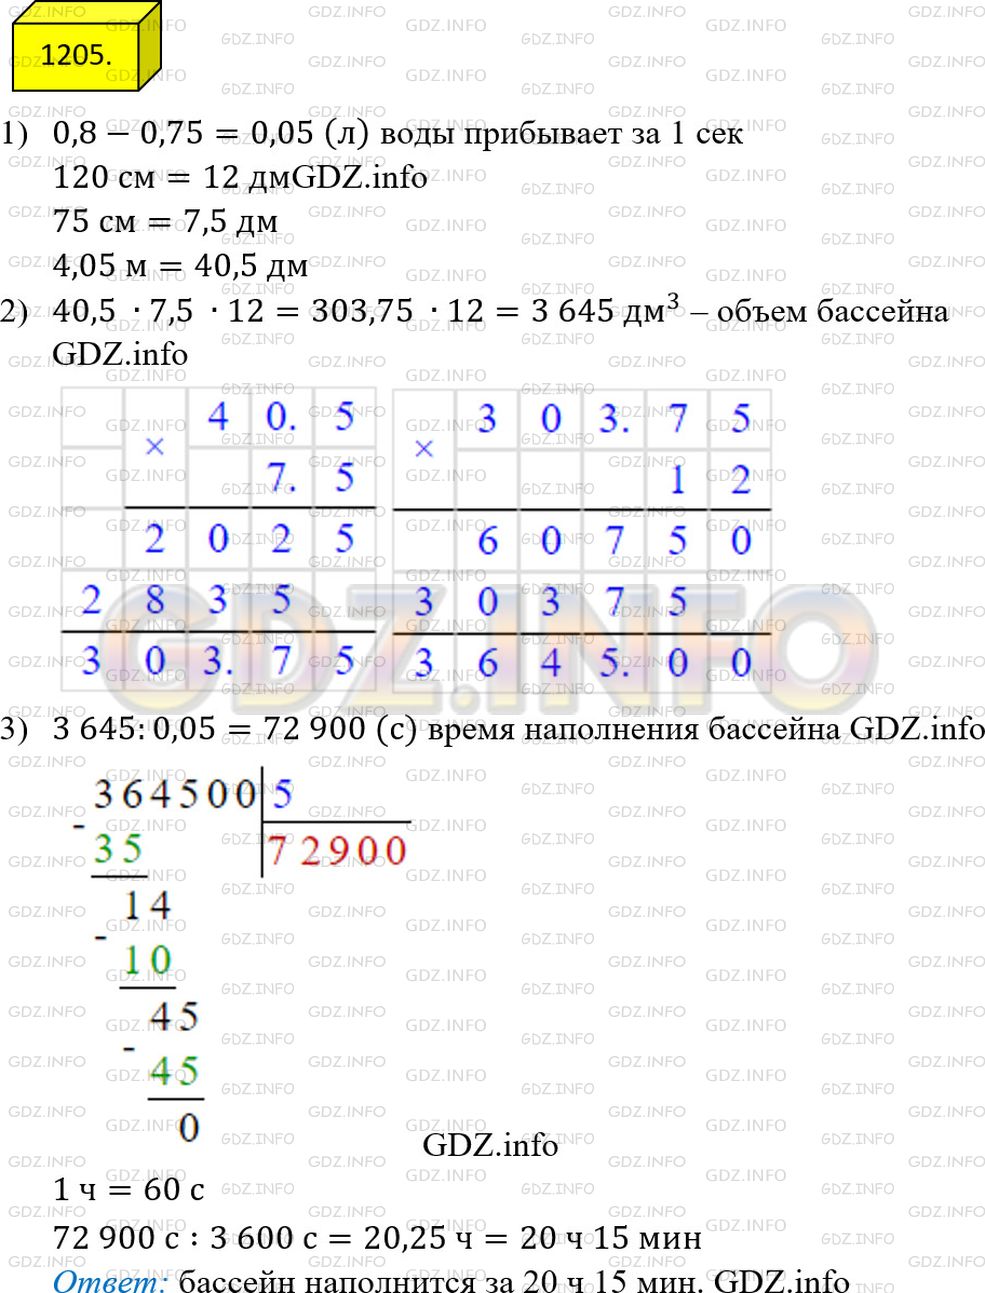 Фото ответа 4 на Задание 1205 из ГДЗ по Математике за 5 класс: А.Г. Мерзляк, В.Б. Полонский, М.С. Якир. 2014г.